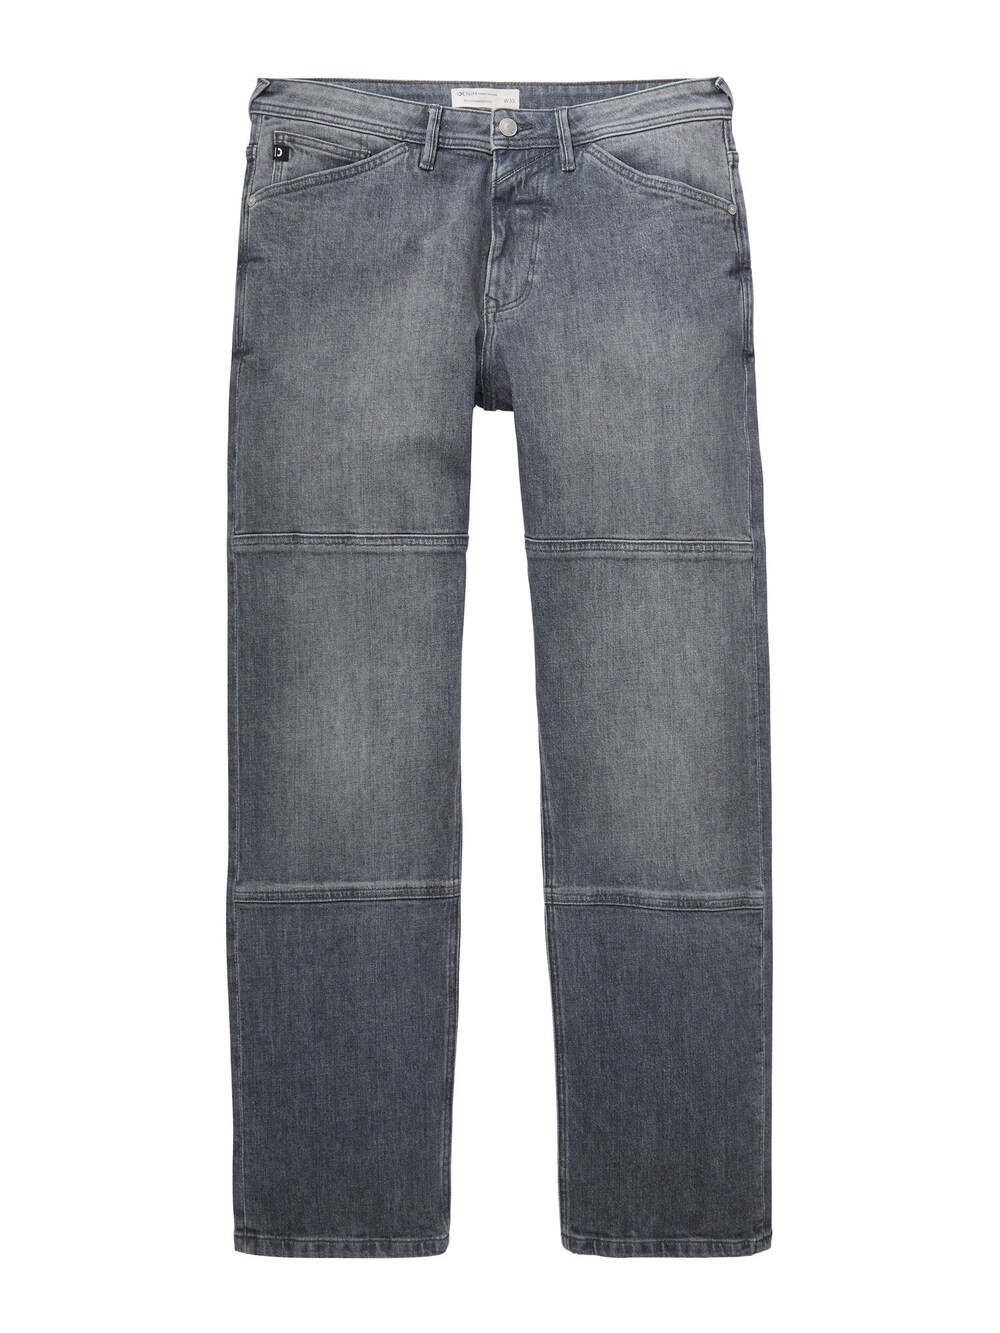 Обычные джинсы TOM TAILOR DENIM, серый